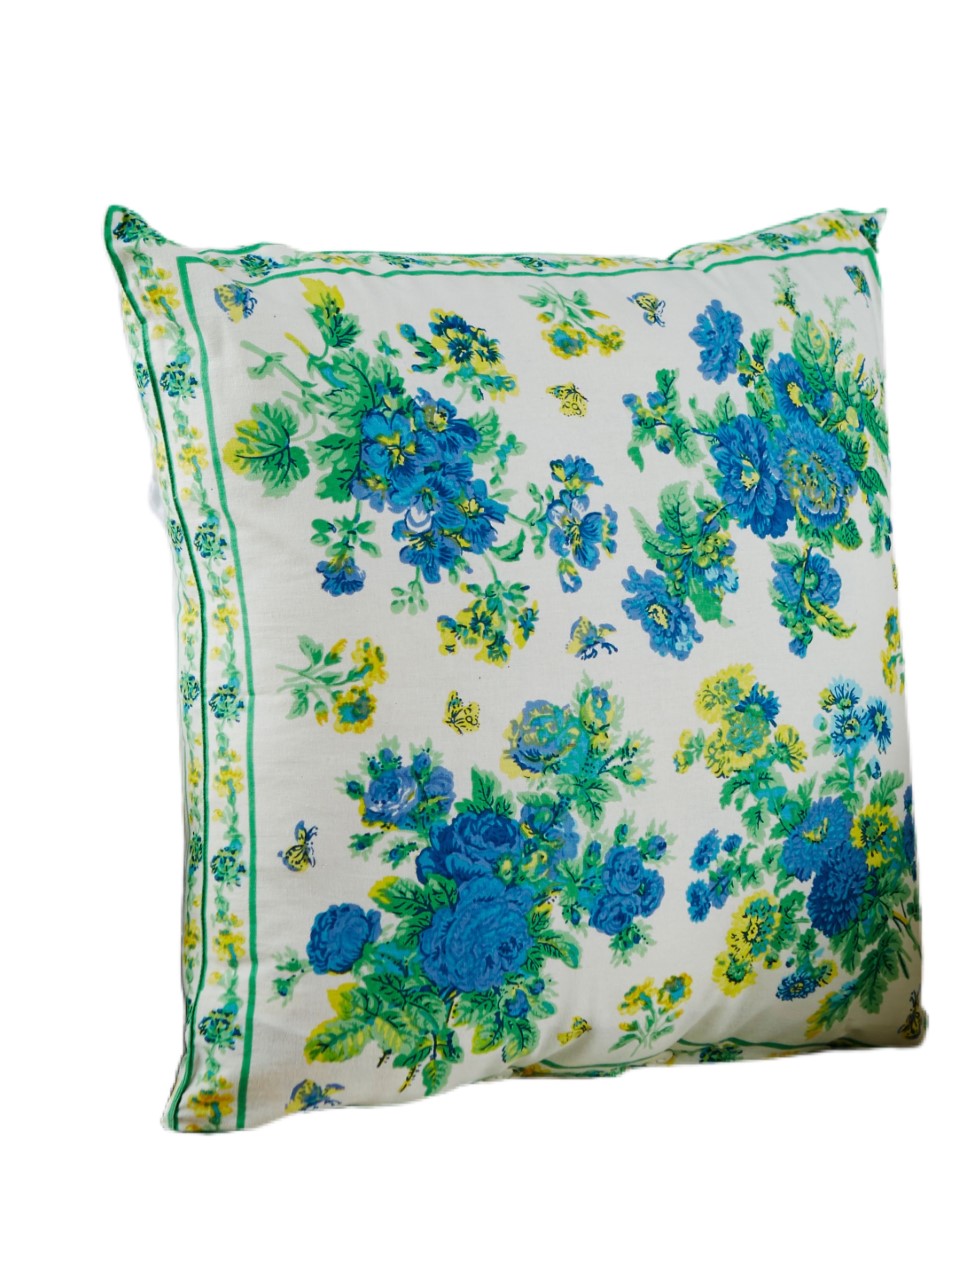 April Cornell Artist's Garden Pillow, Blue